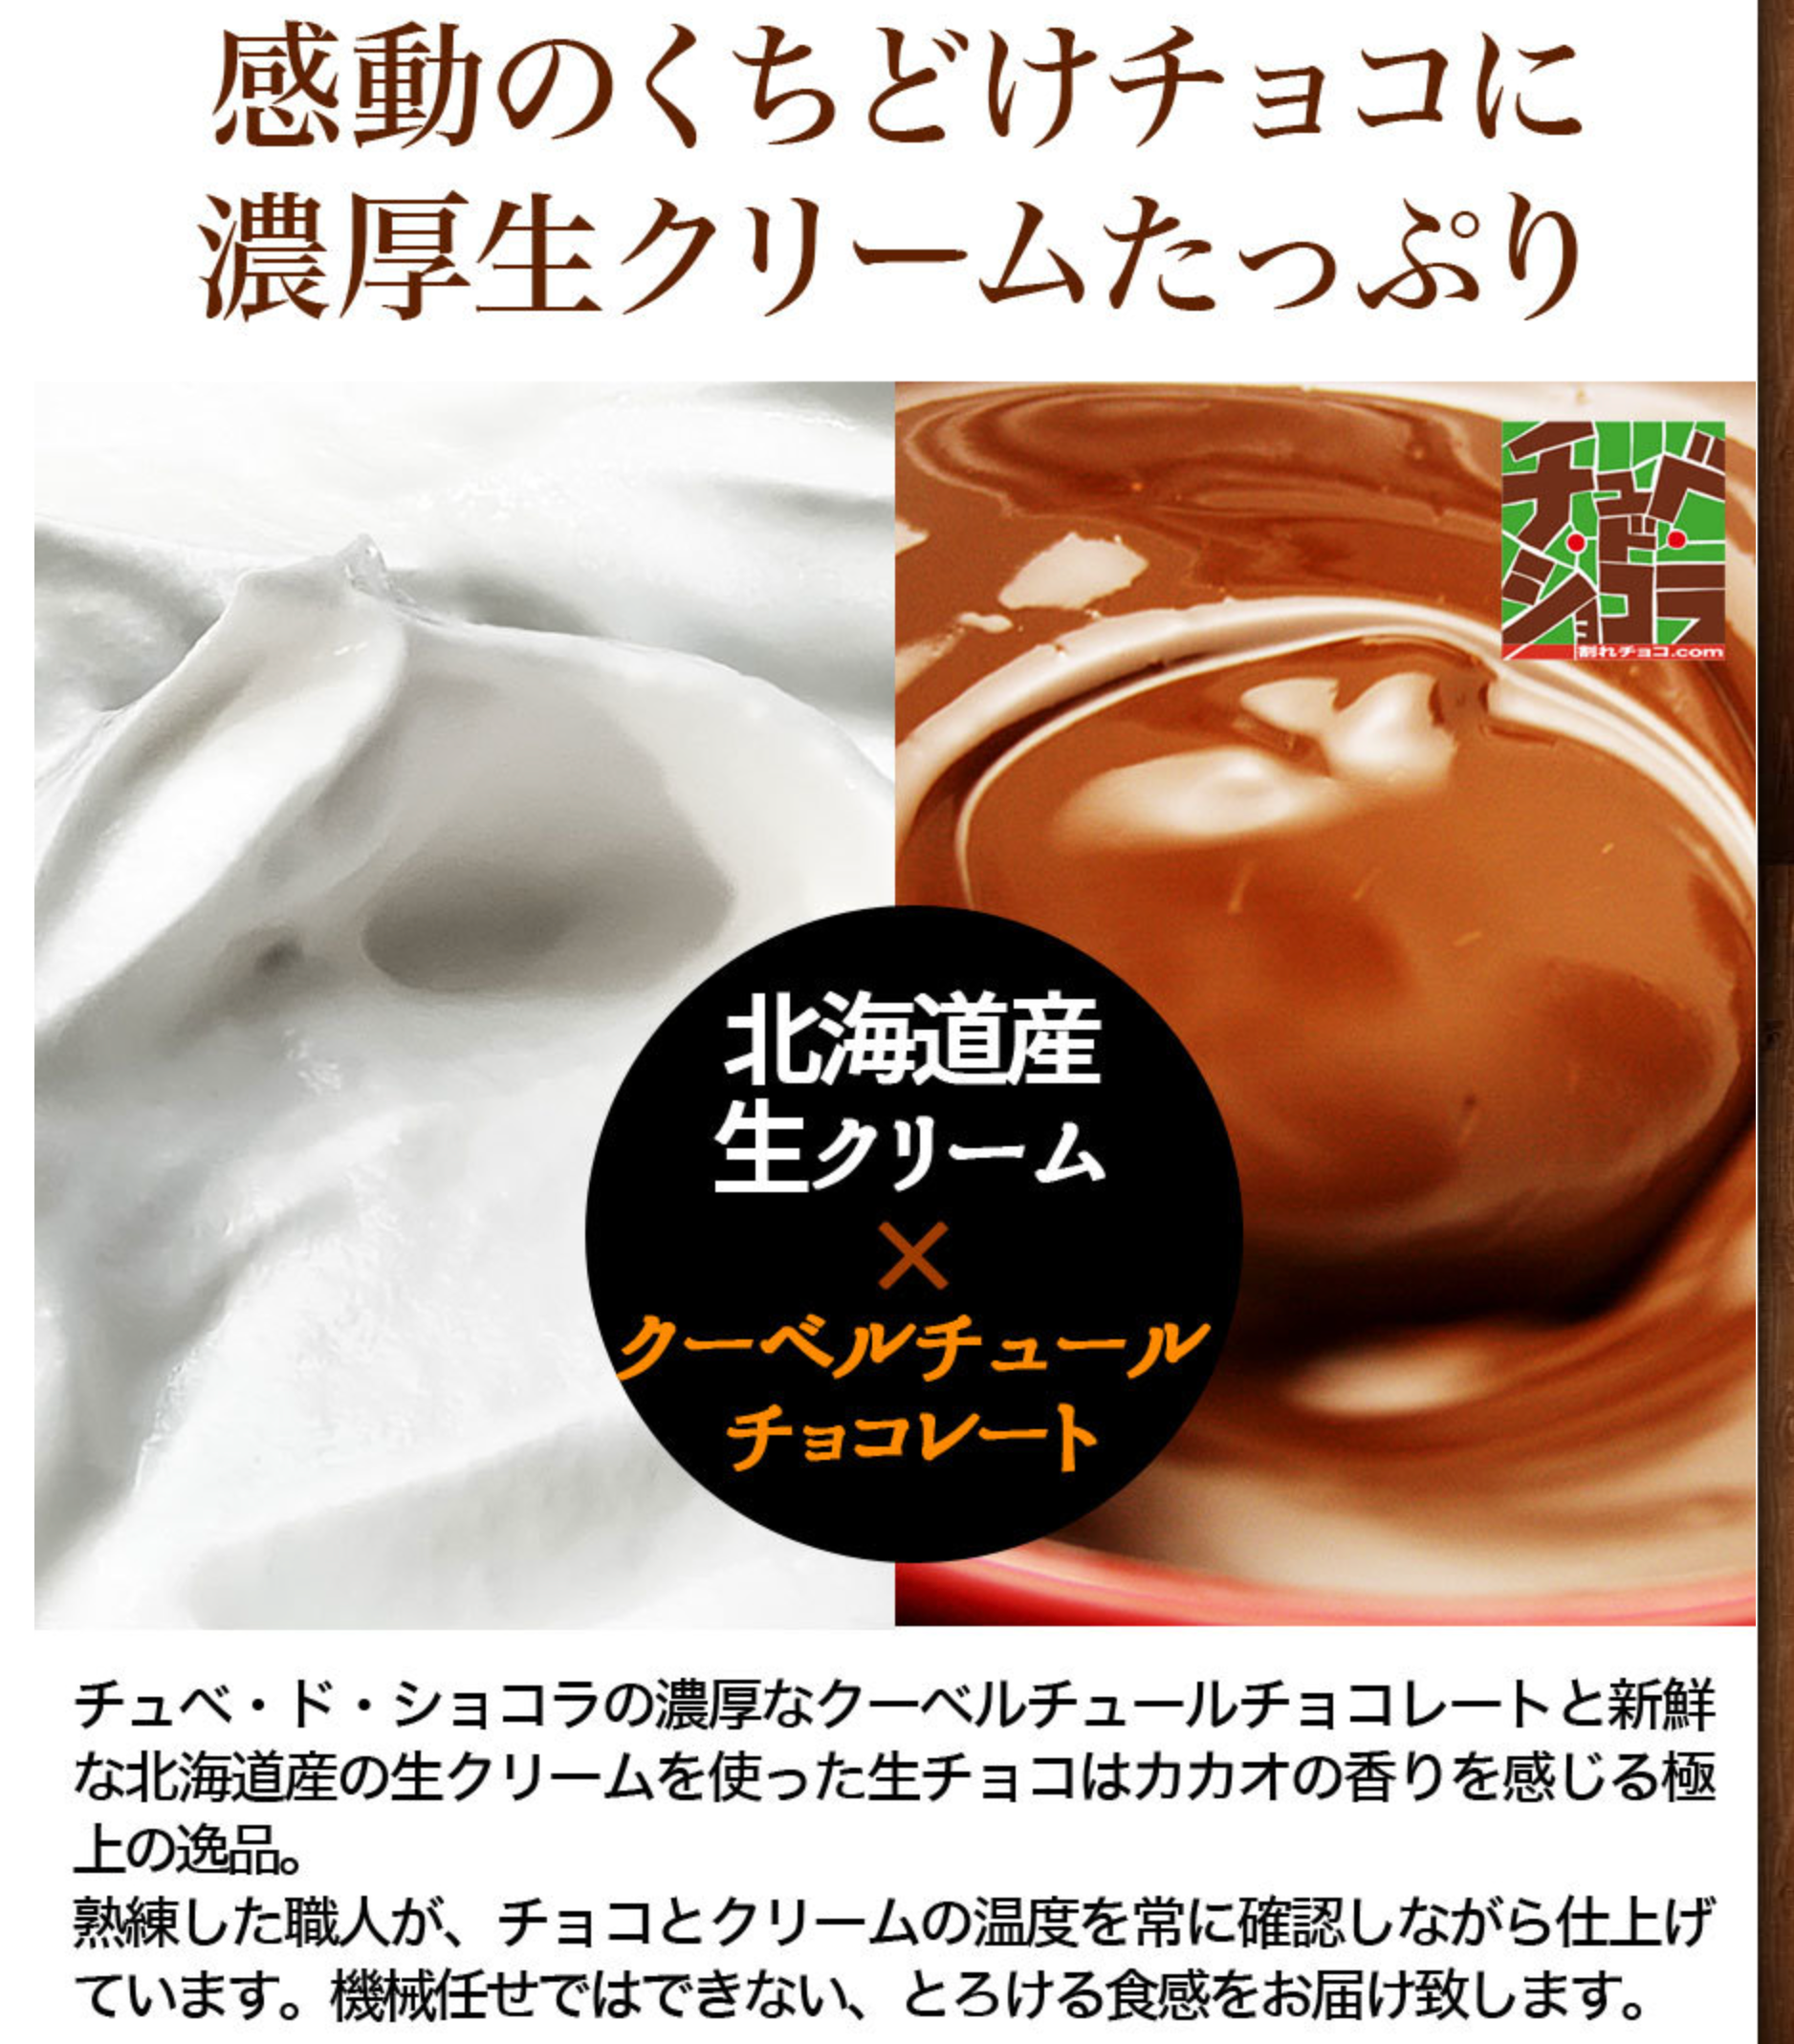 2【くちどけ生ショコラ-500g】-チュベ・ド・ショコラ-割れチョコ一覧-チュベ・ド・ショコラ